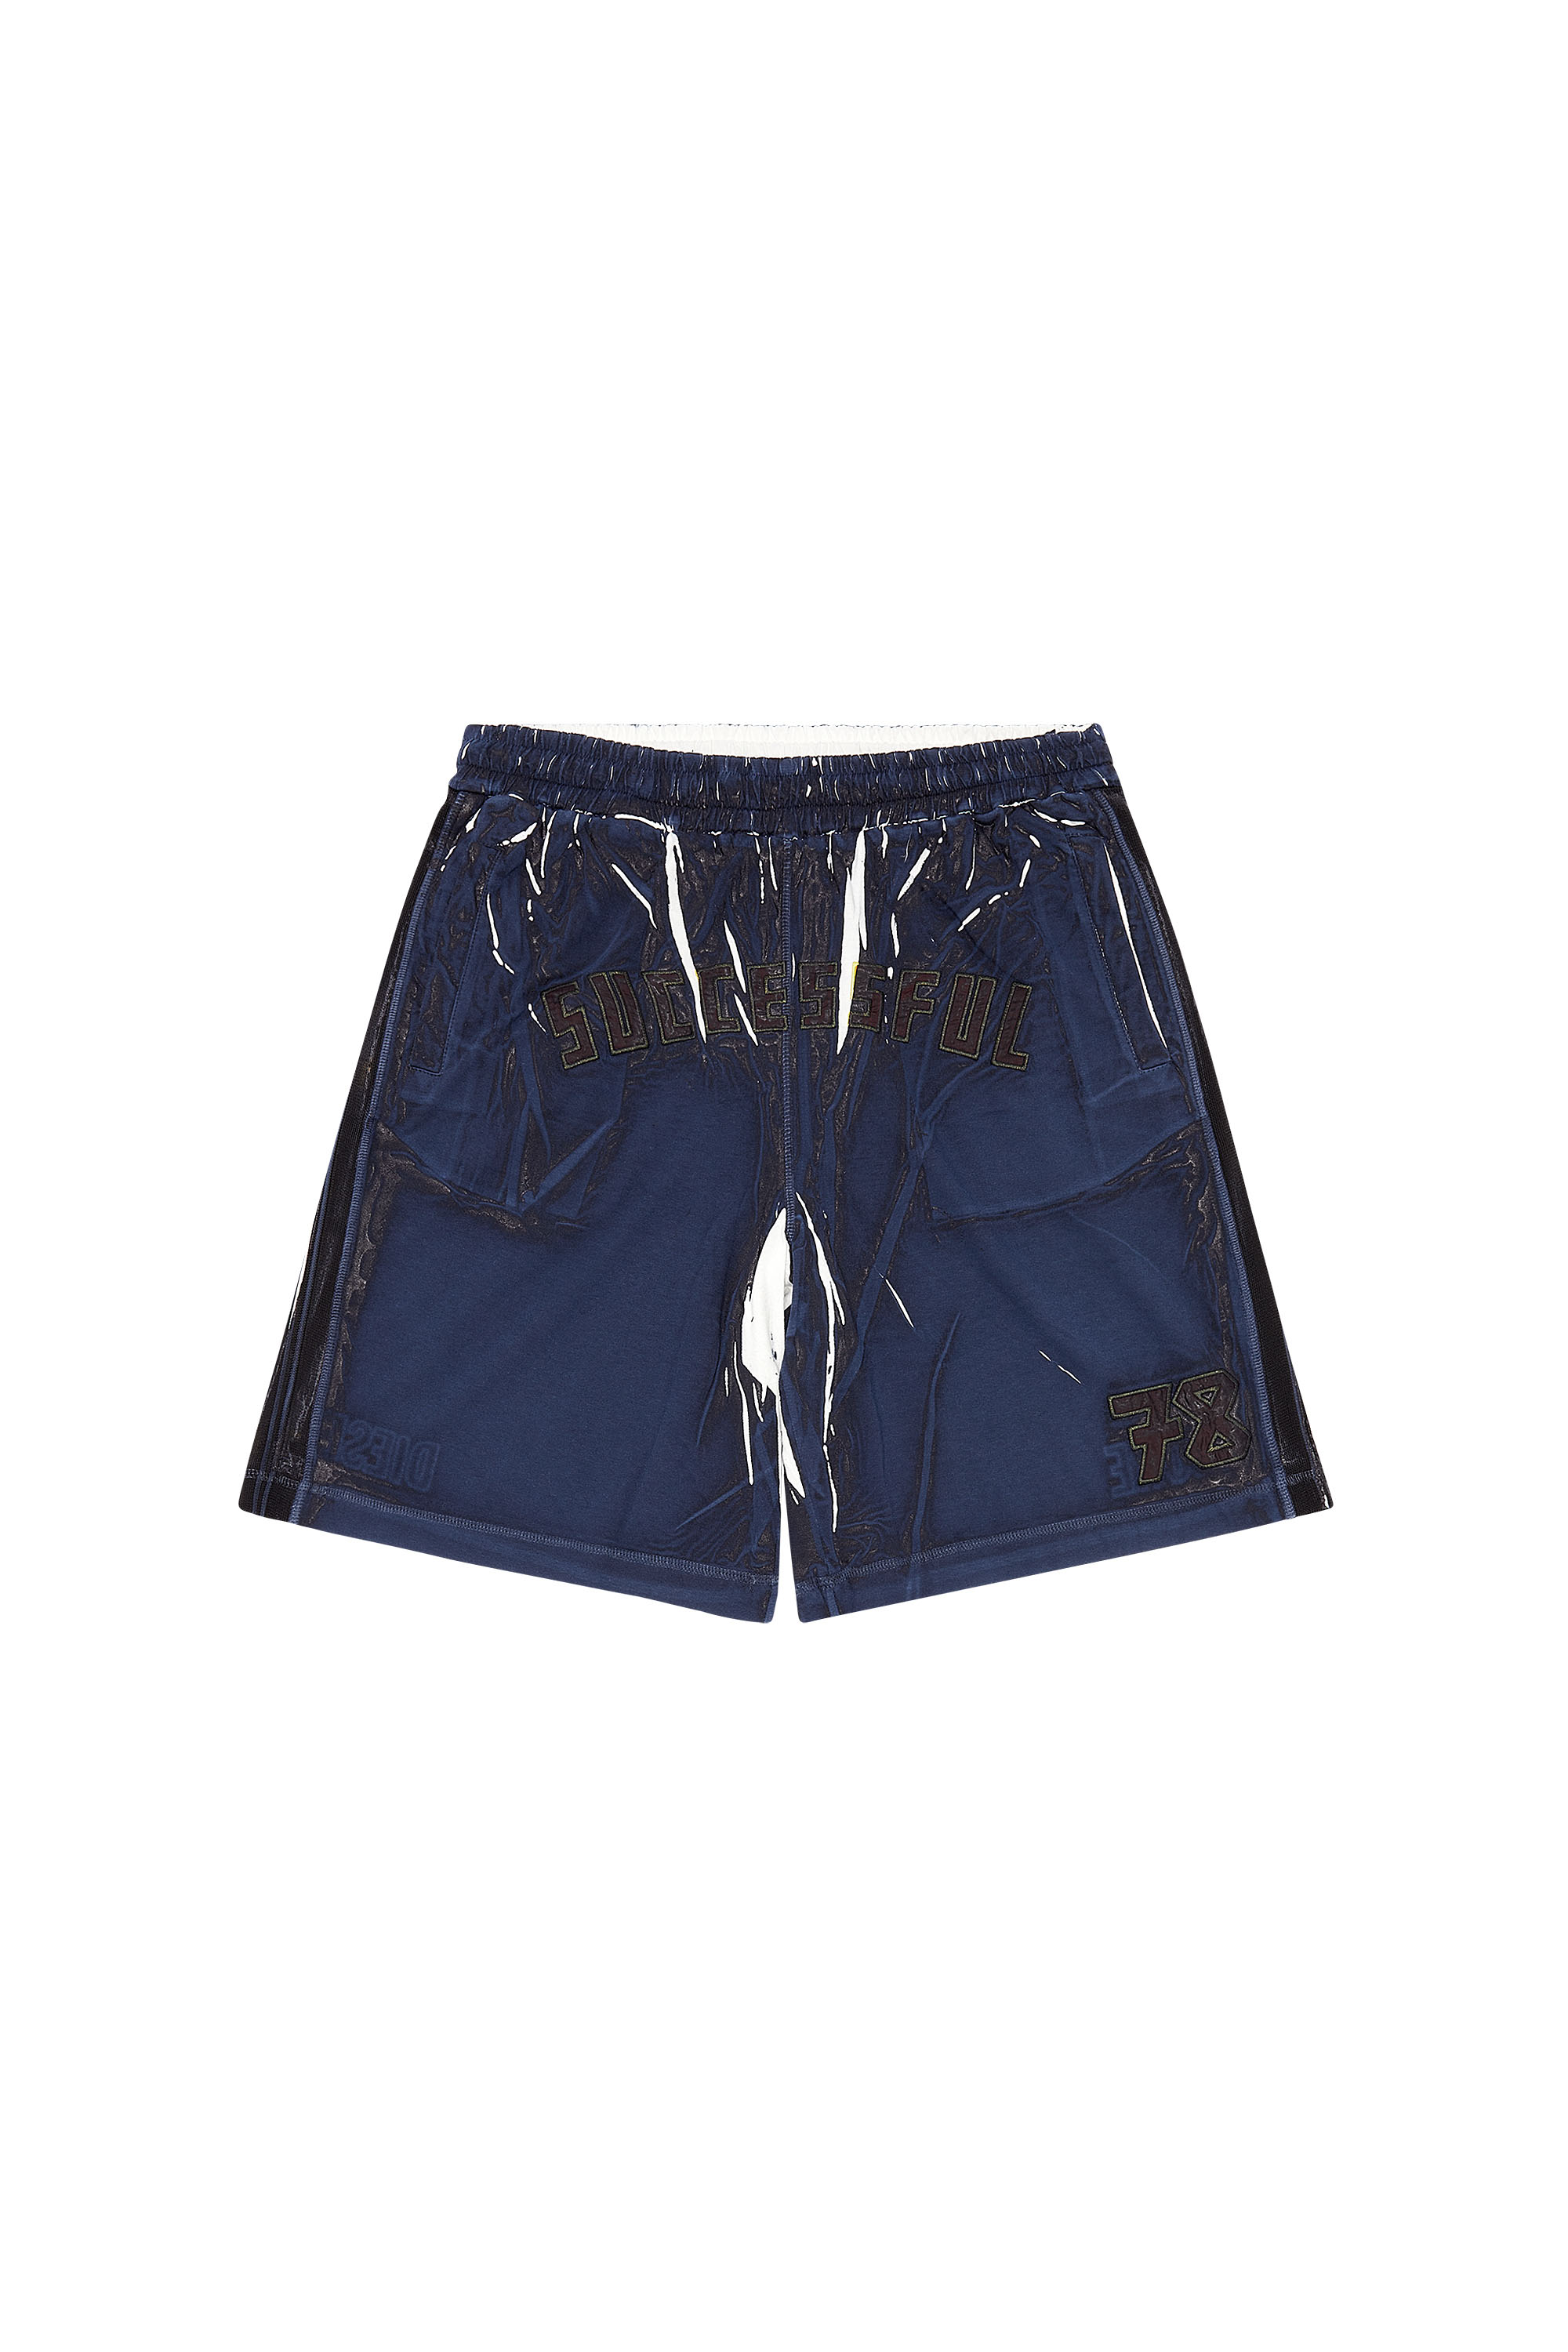 Diesel - P-ROWY, Hombre Pantalones cortos deportivos con sobreimpresión sombreada in Azul marino - Image 5